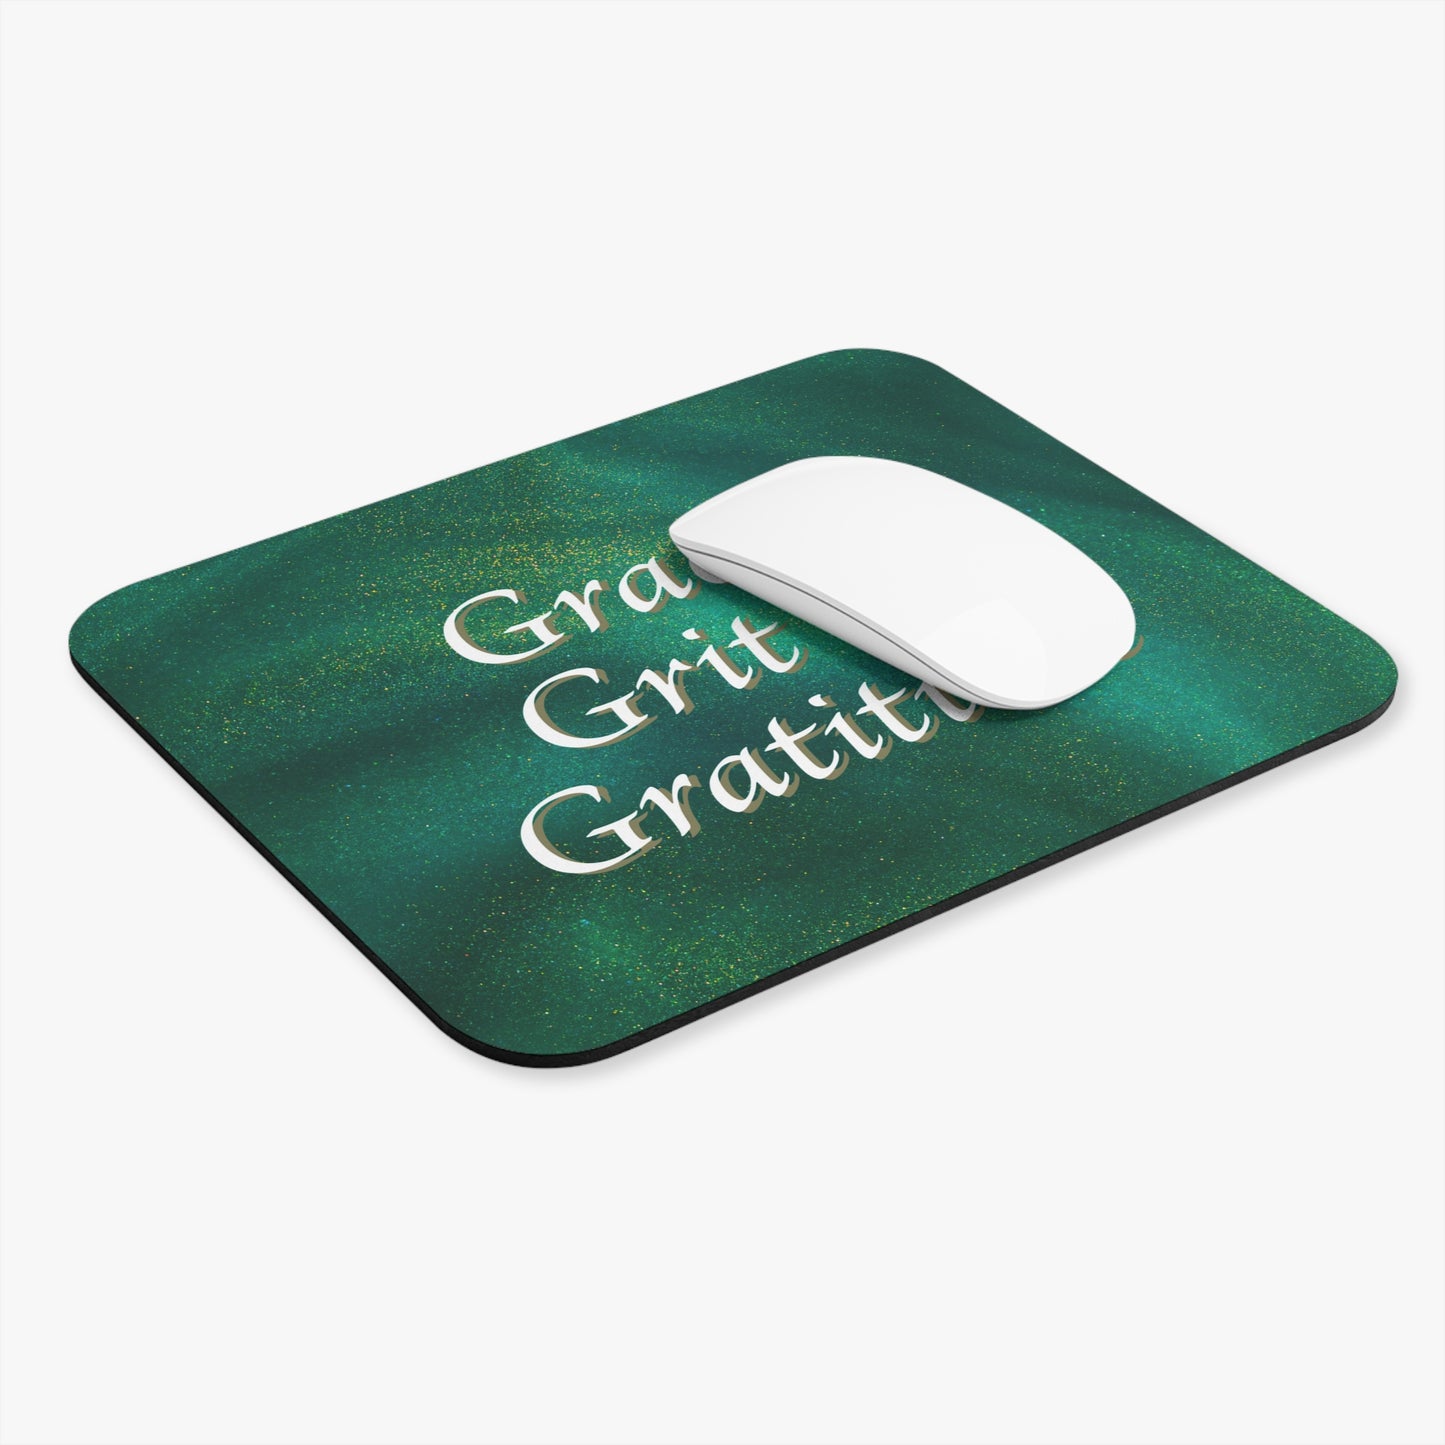 Mouse Pad (Rectangle) - Grace, Grit, & Gratitude Green Sparkle